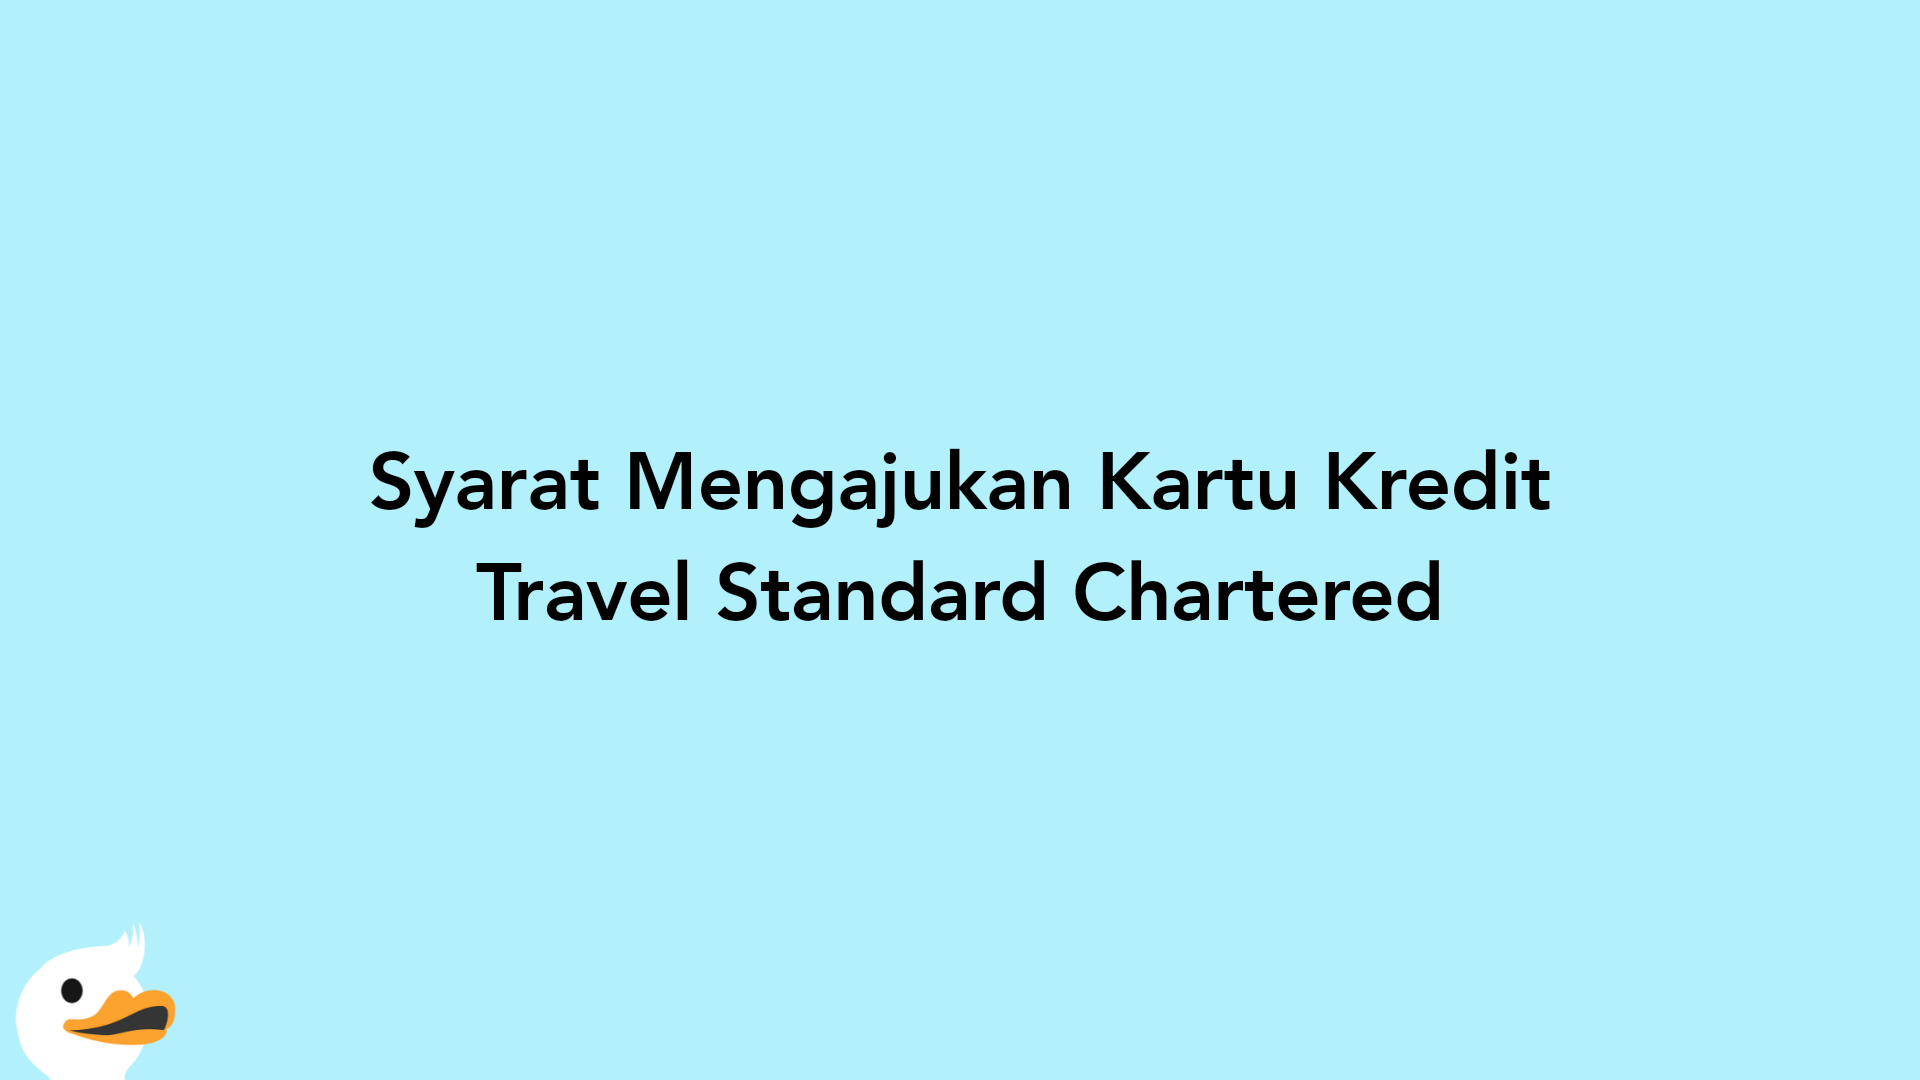 Syarat Mengajukan Kartu Kredit Travel Standard Chartered